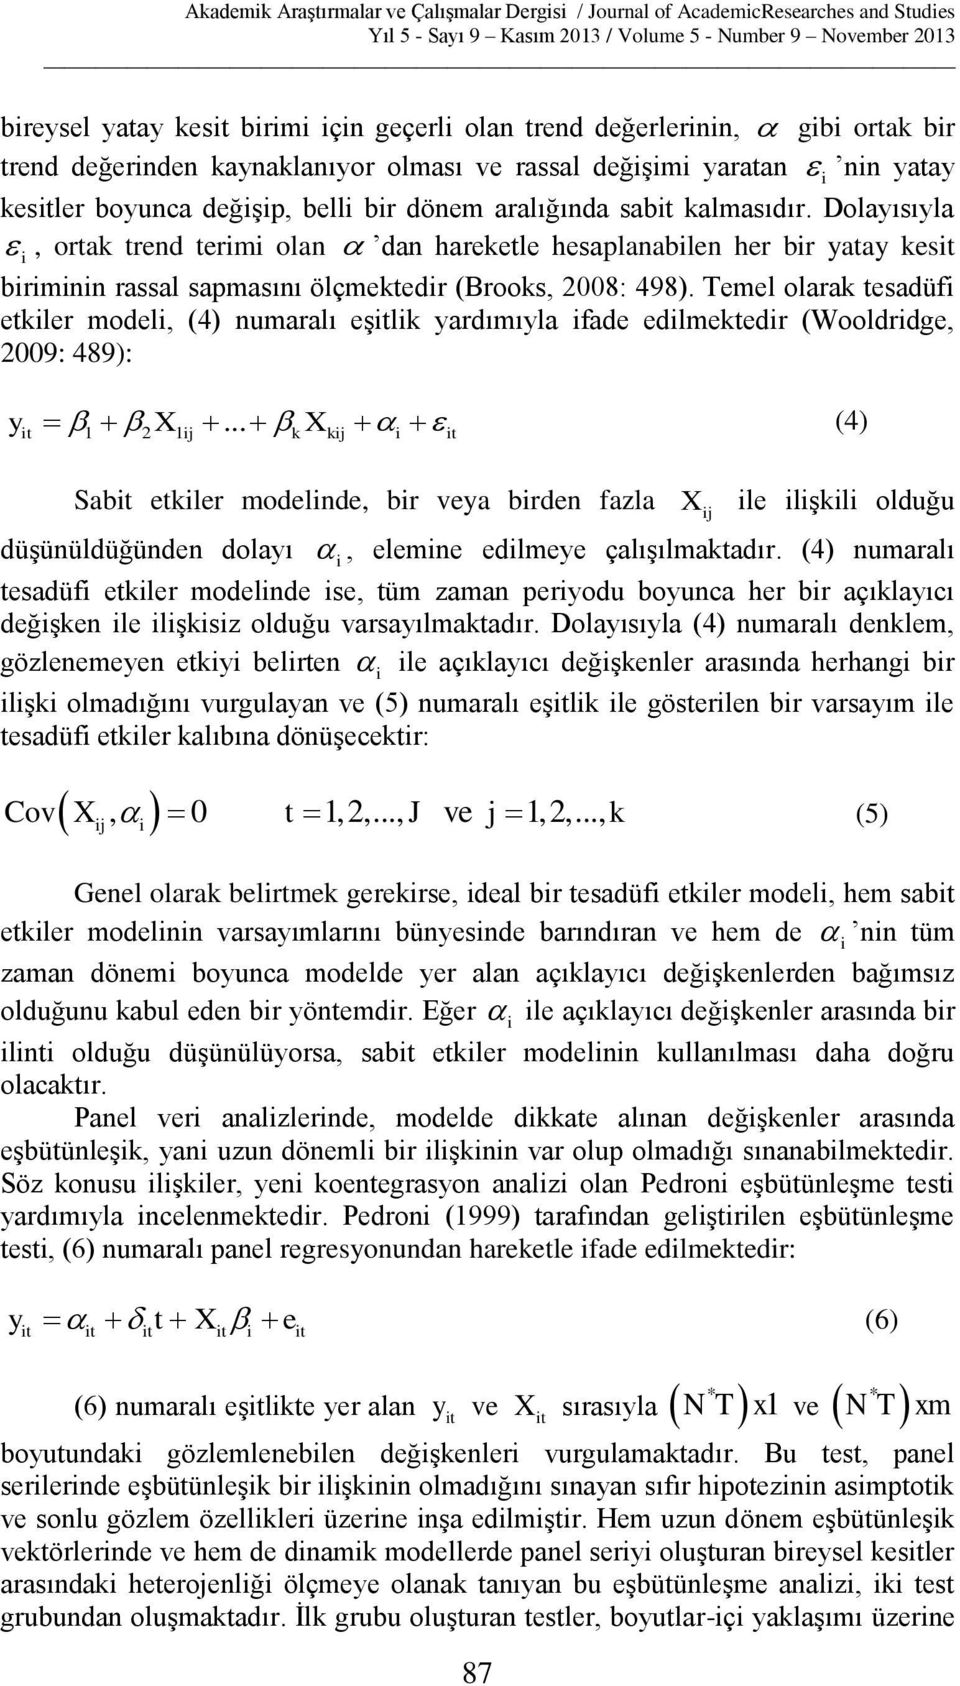 Temel olarak tesadüfi etkiler modeli, (4) numaralı eşitlik yardımıyla ifade edilmektedir (Wooldridge, 2009: 489): y X X (4) it 1 2 1 ij.